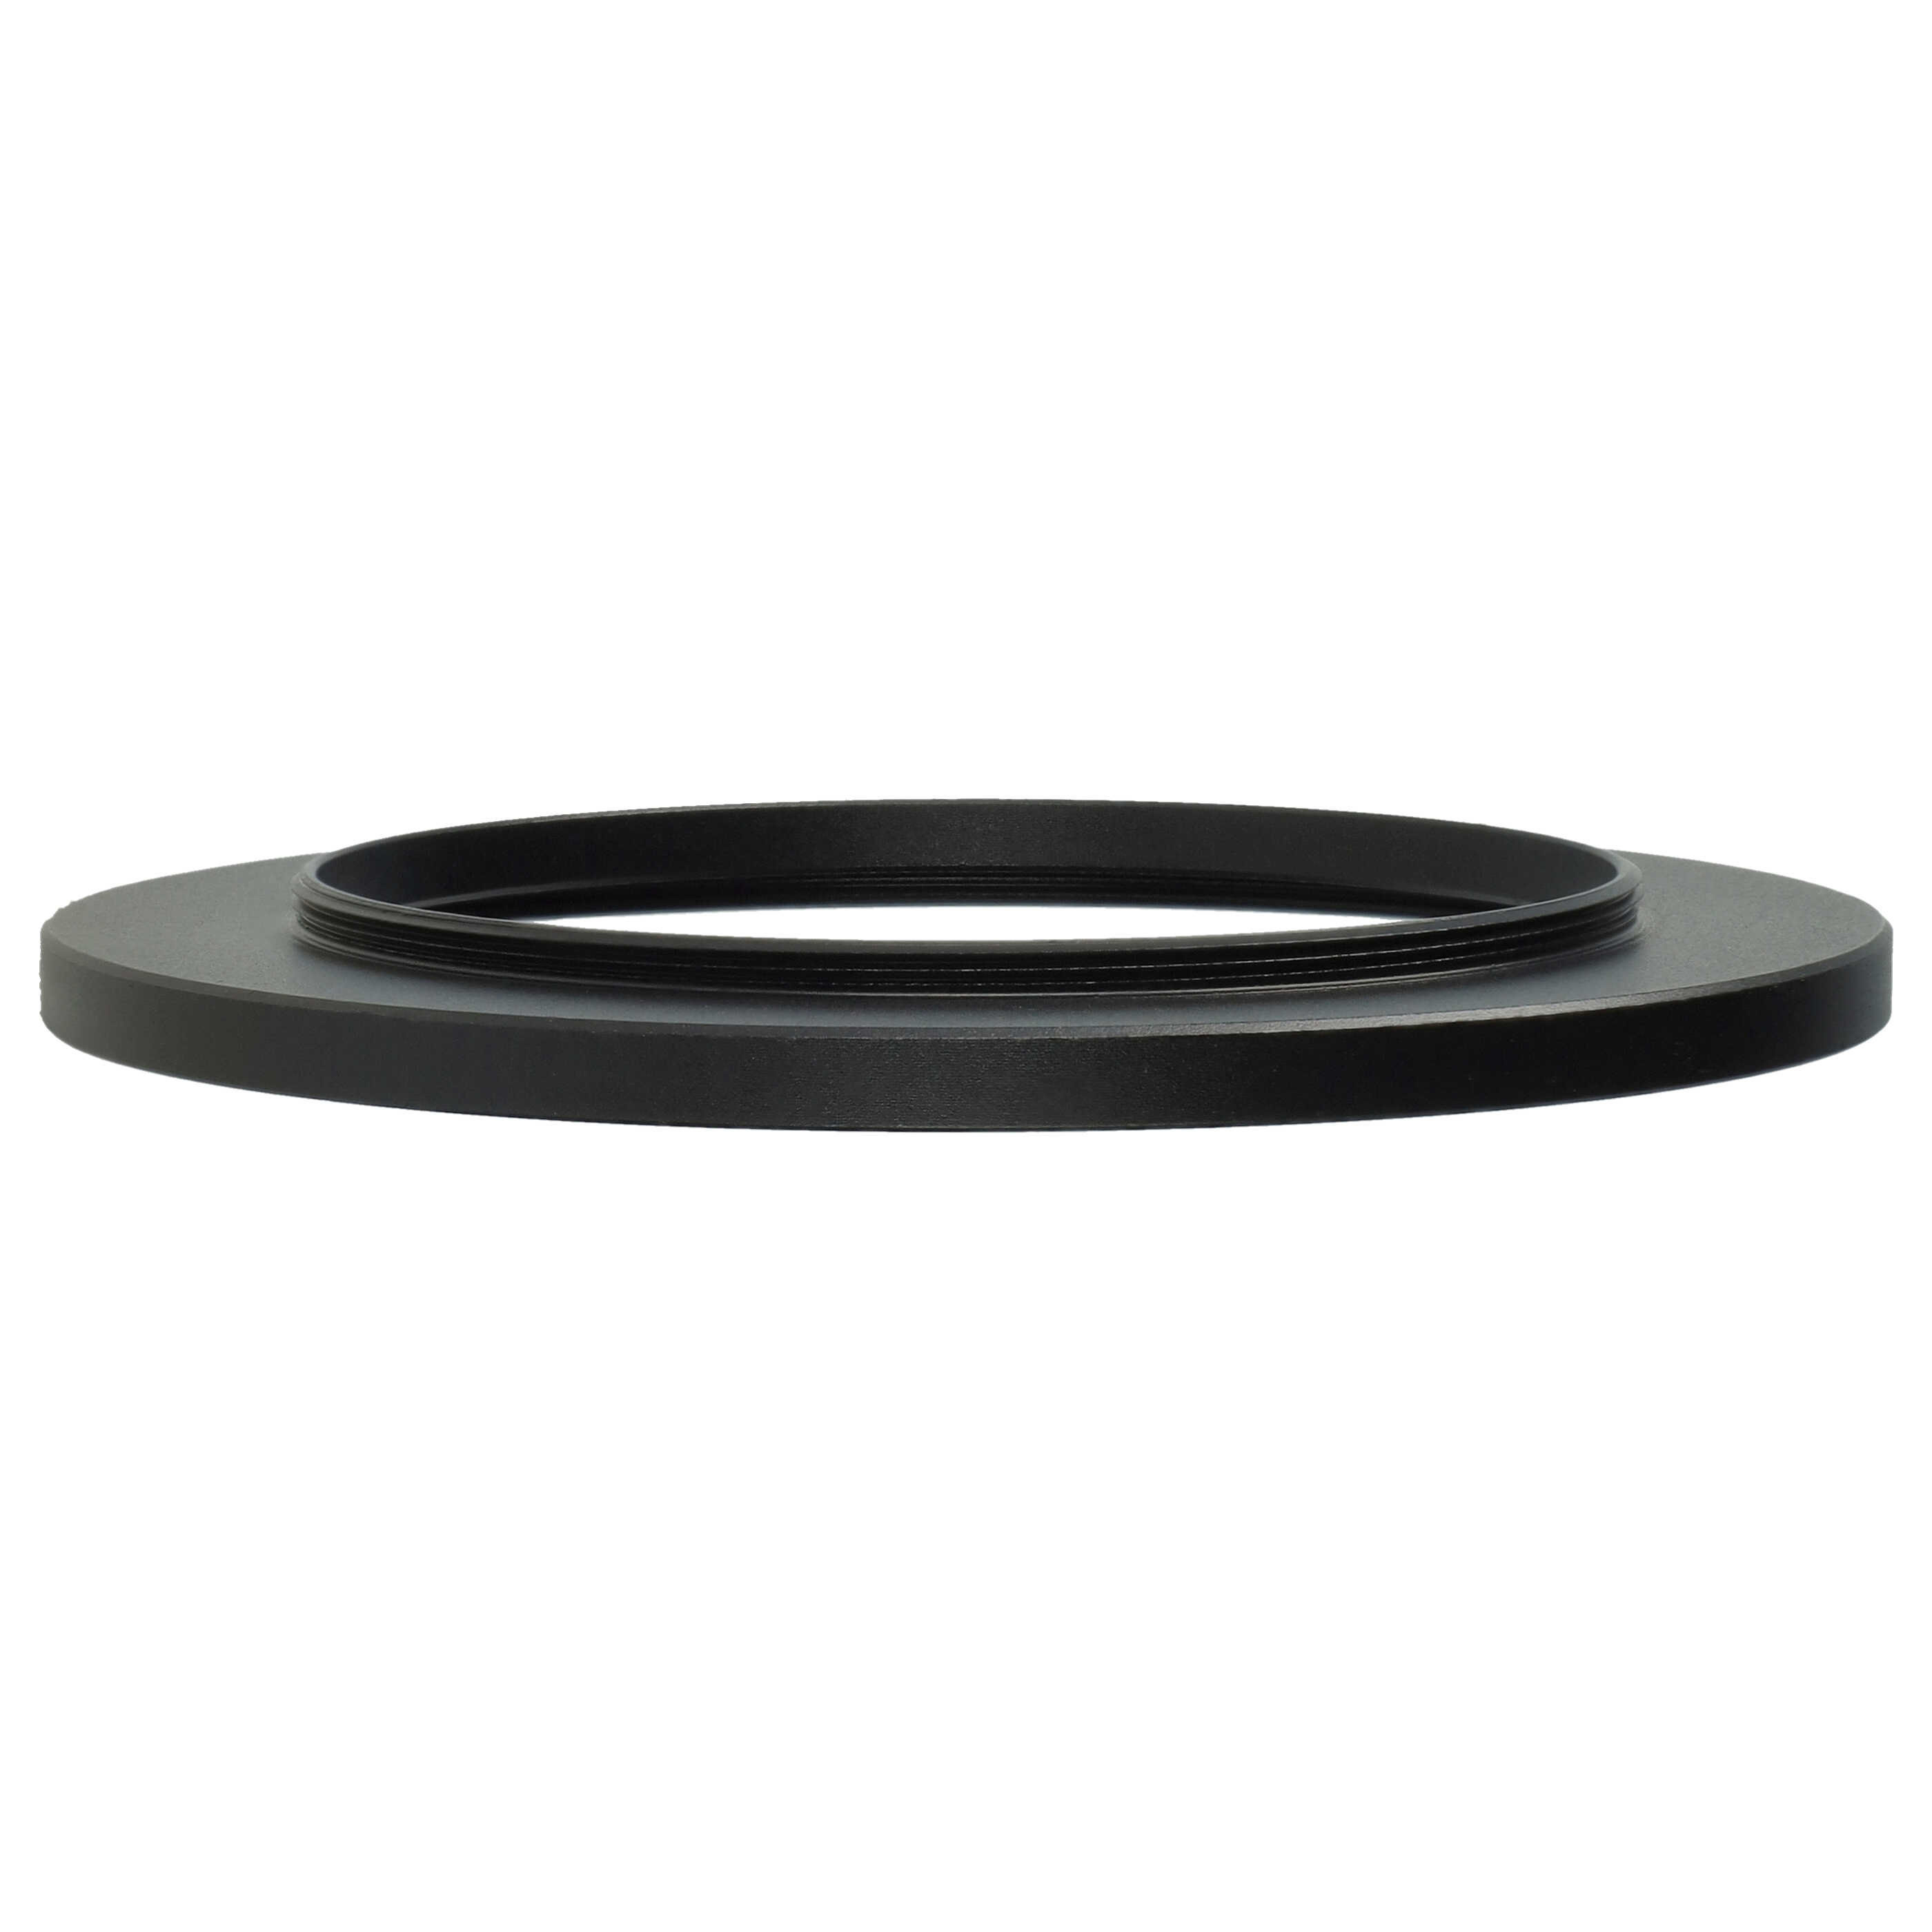 Step-Up-Ring Adapter 62 mm auf 82 mm passend für diverse Kamera-Objektive - Filteradapter